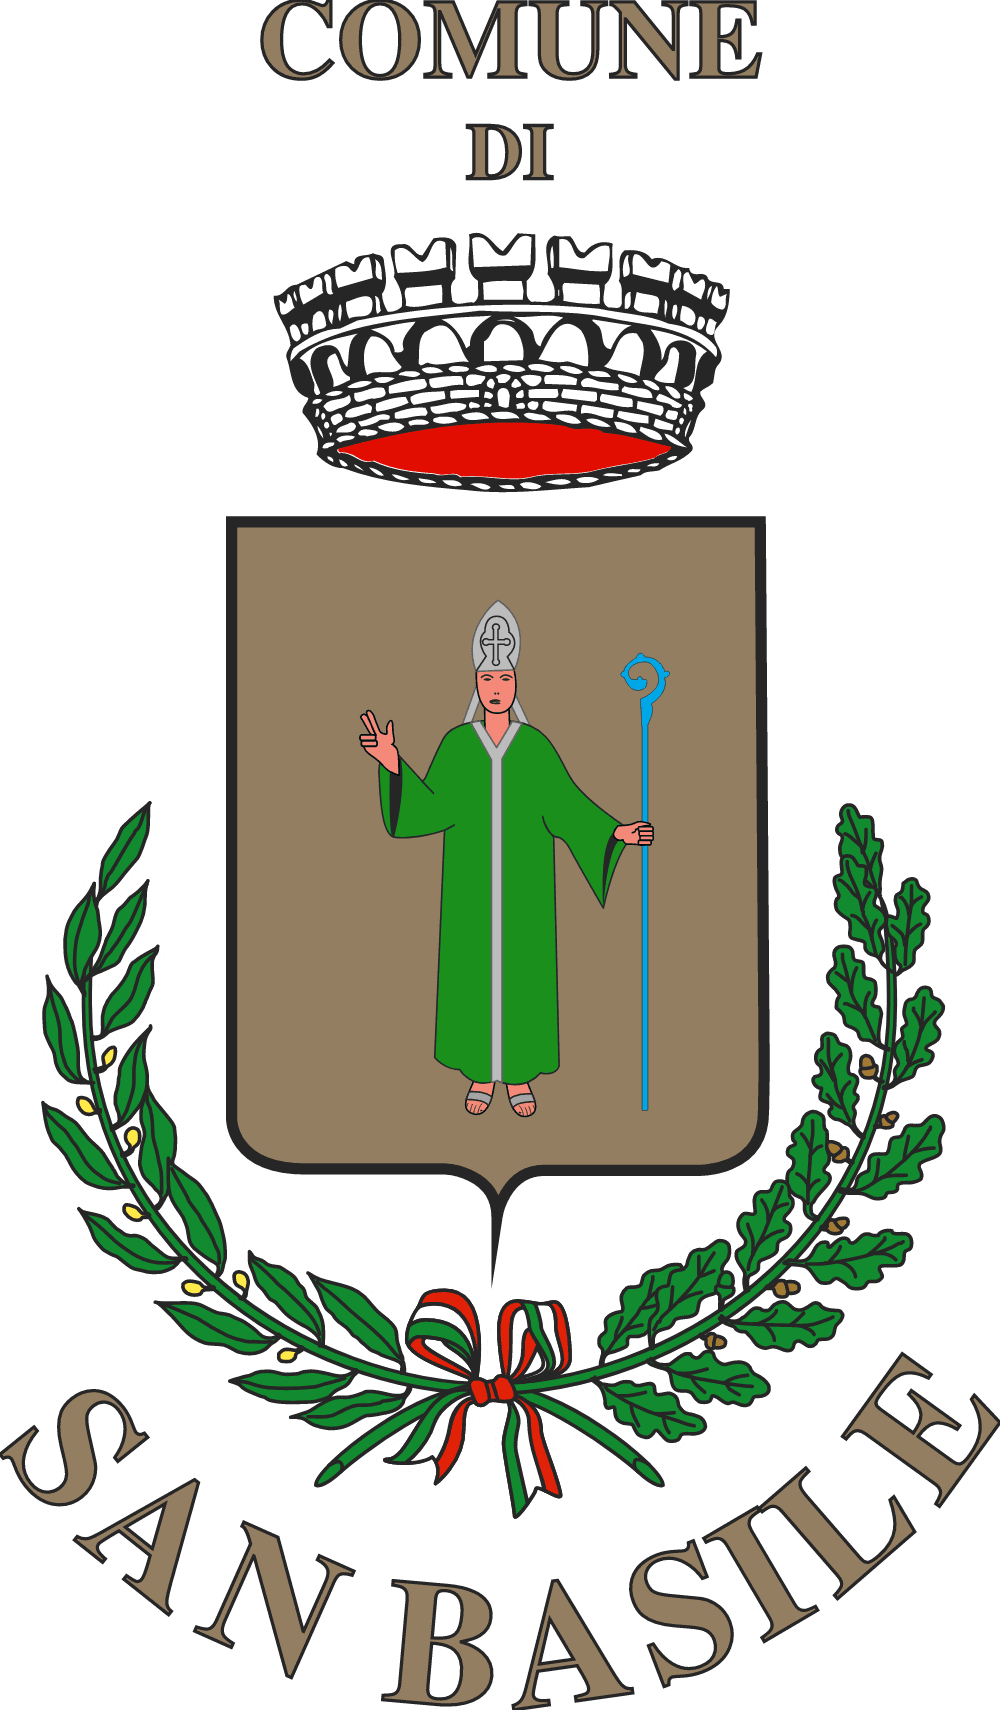 Comune di San Basile Logo download